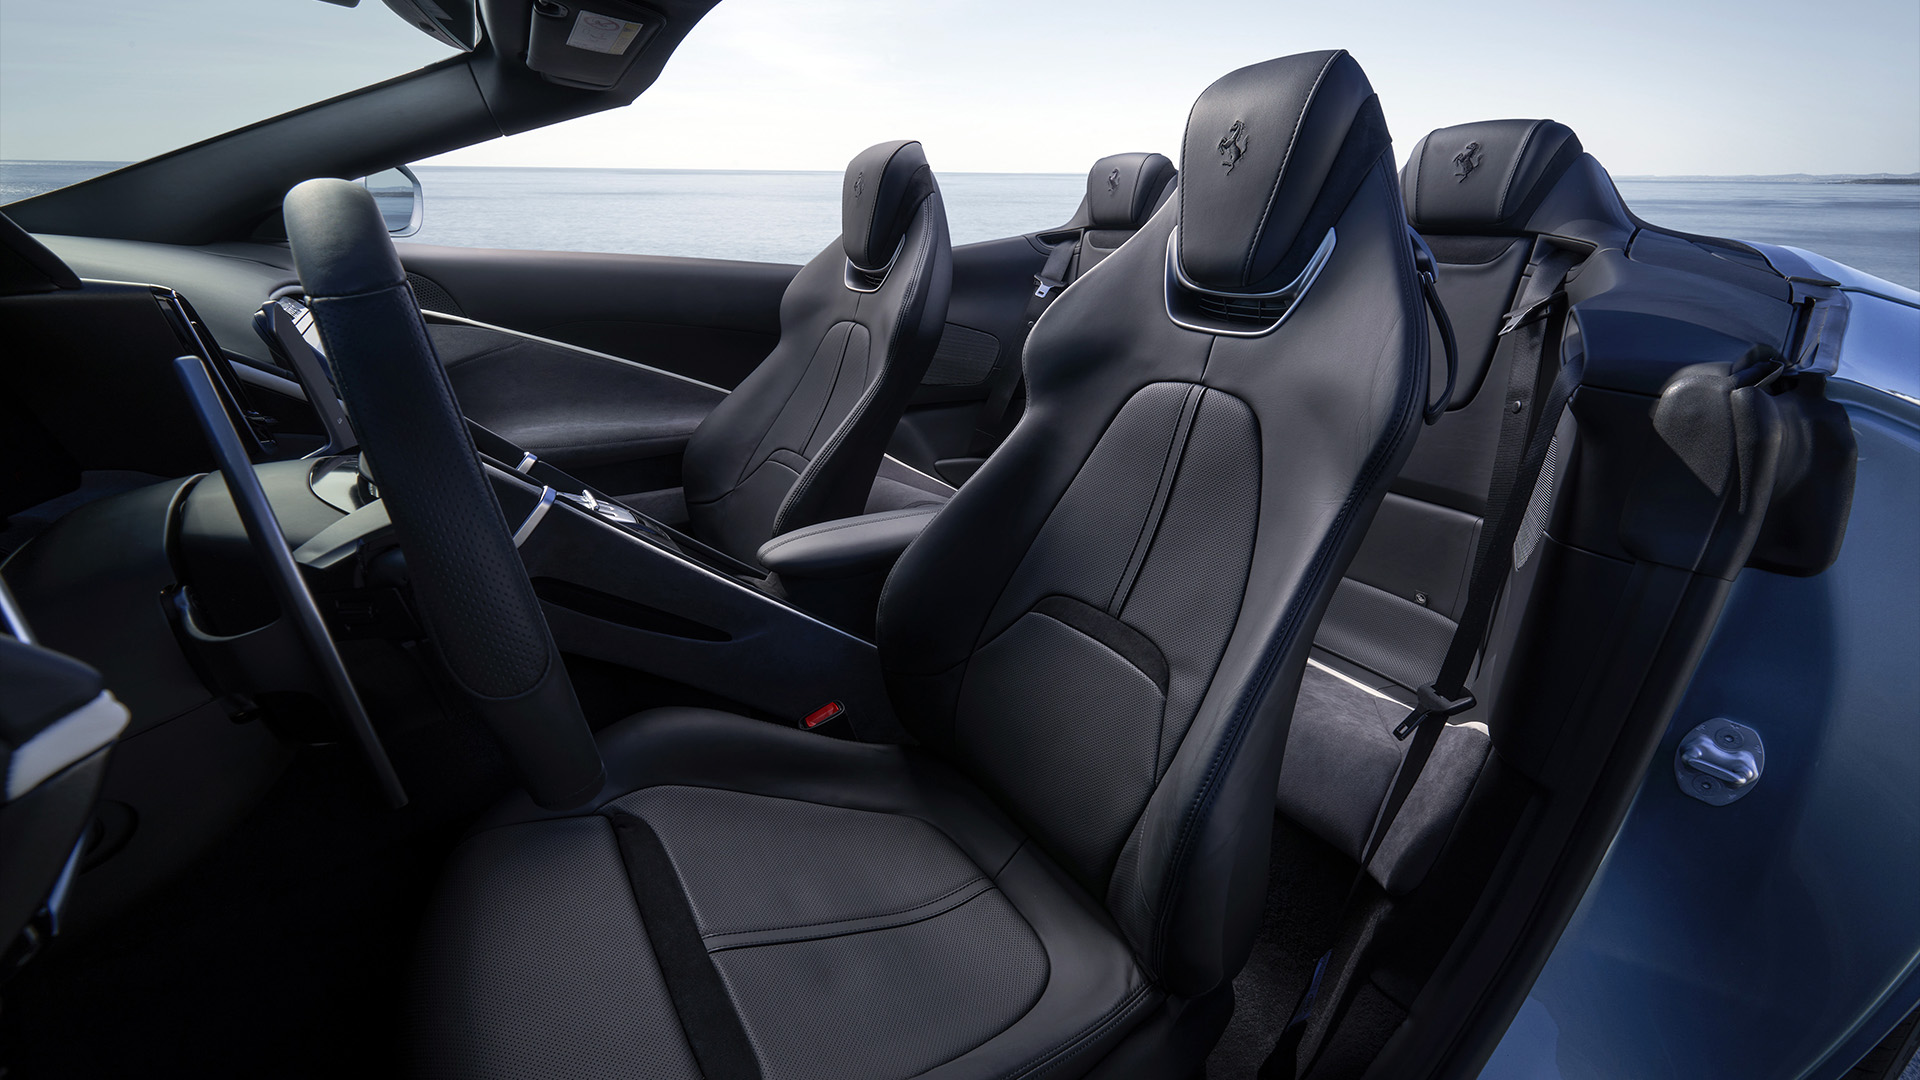 El interior adopta la configuración de 2+ plazas, pero cuando no hay ocupantes en los asientos traseros, el respaldo se gira y se coloca en la espalda de los delanteros, para generar una burbuja más confortable